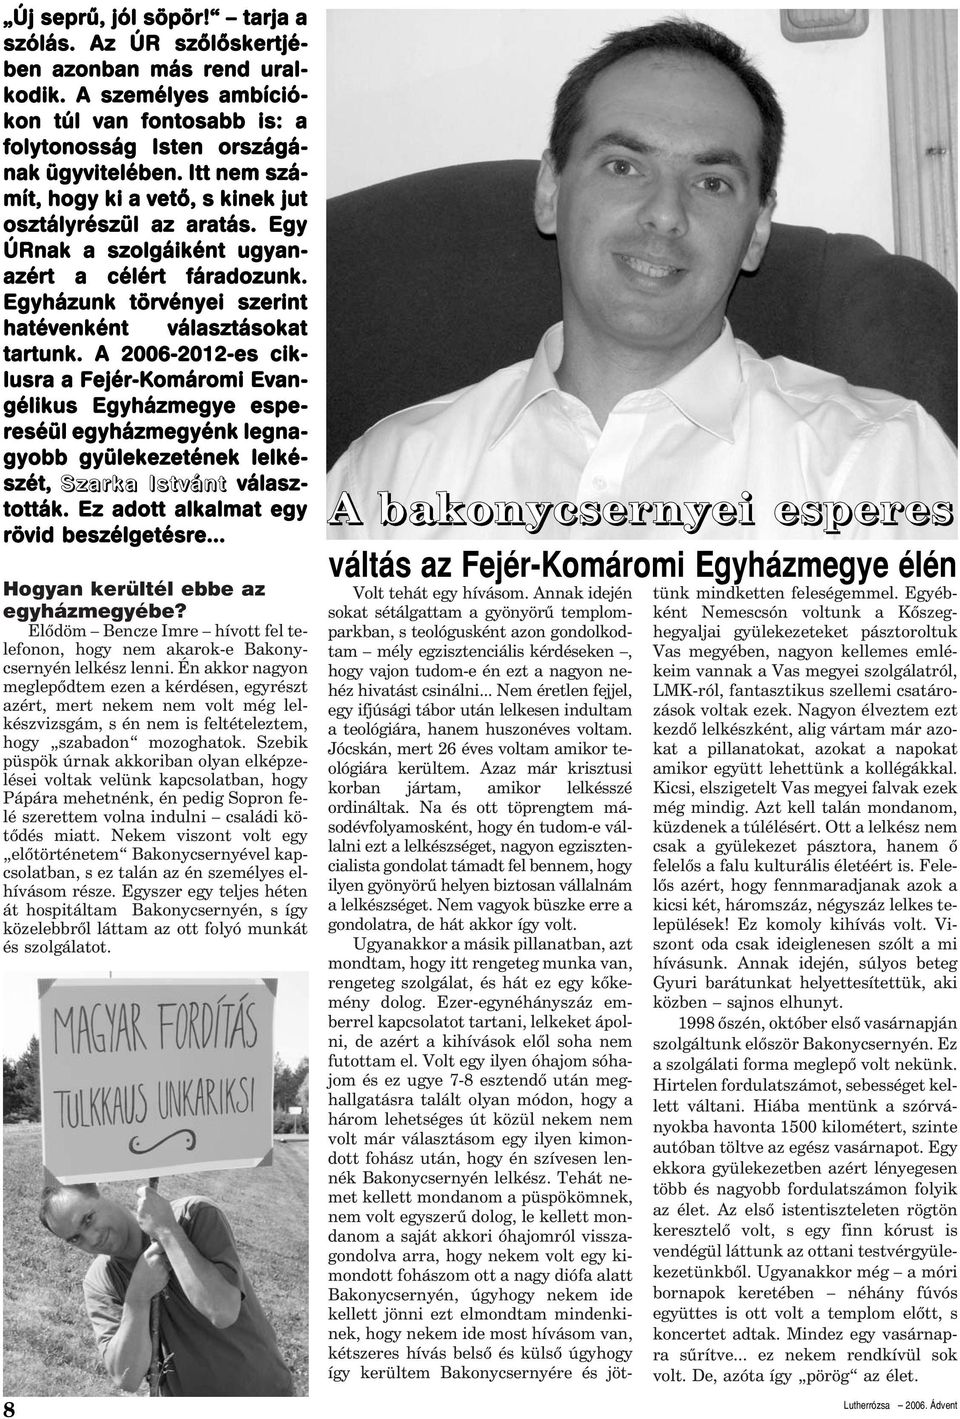 A 2006-2012-es ciklusra a Fejér-Komáromi Evangélikus Egyházmegye espereséül egyházmegyénk legnagyobb gyülekezetének lelkészét, Szarka Istvánt választották. Ez adott alkalmat egy rövid beszélgetésre.